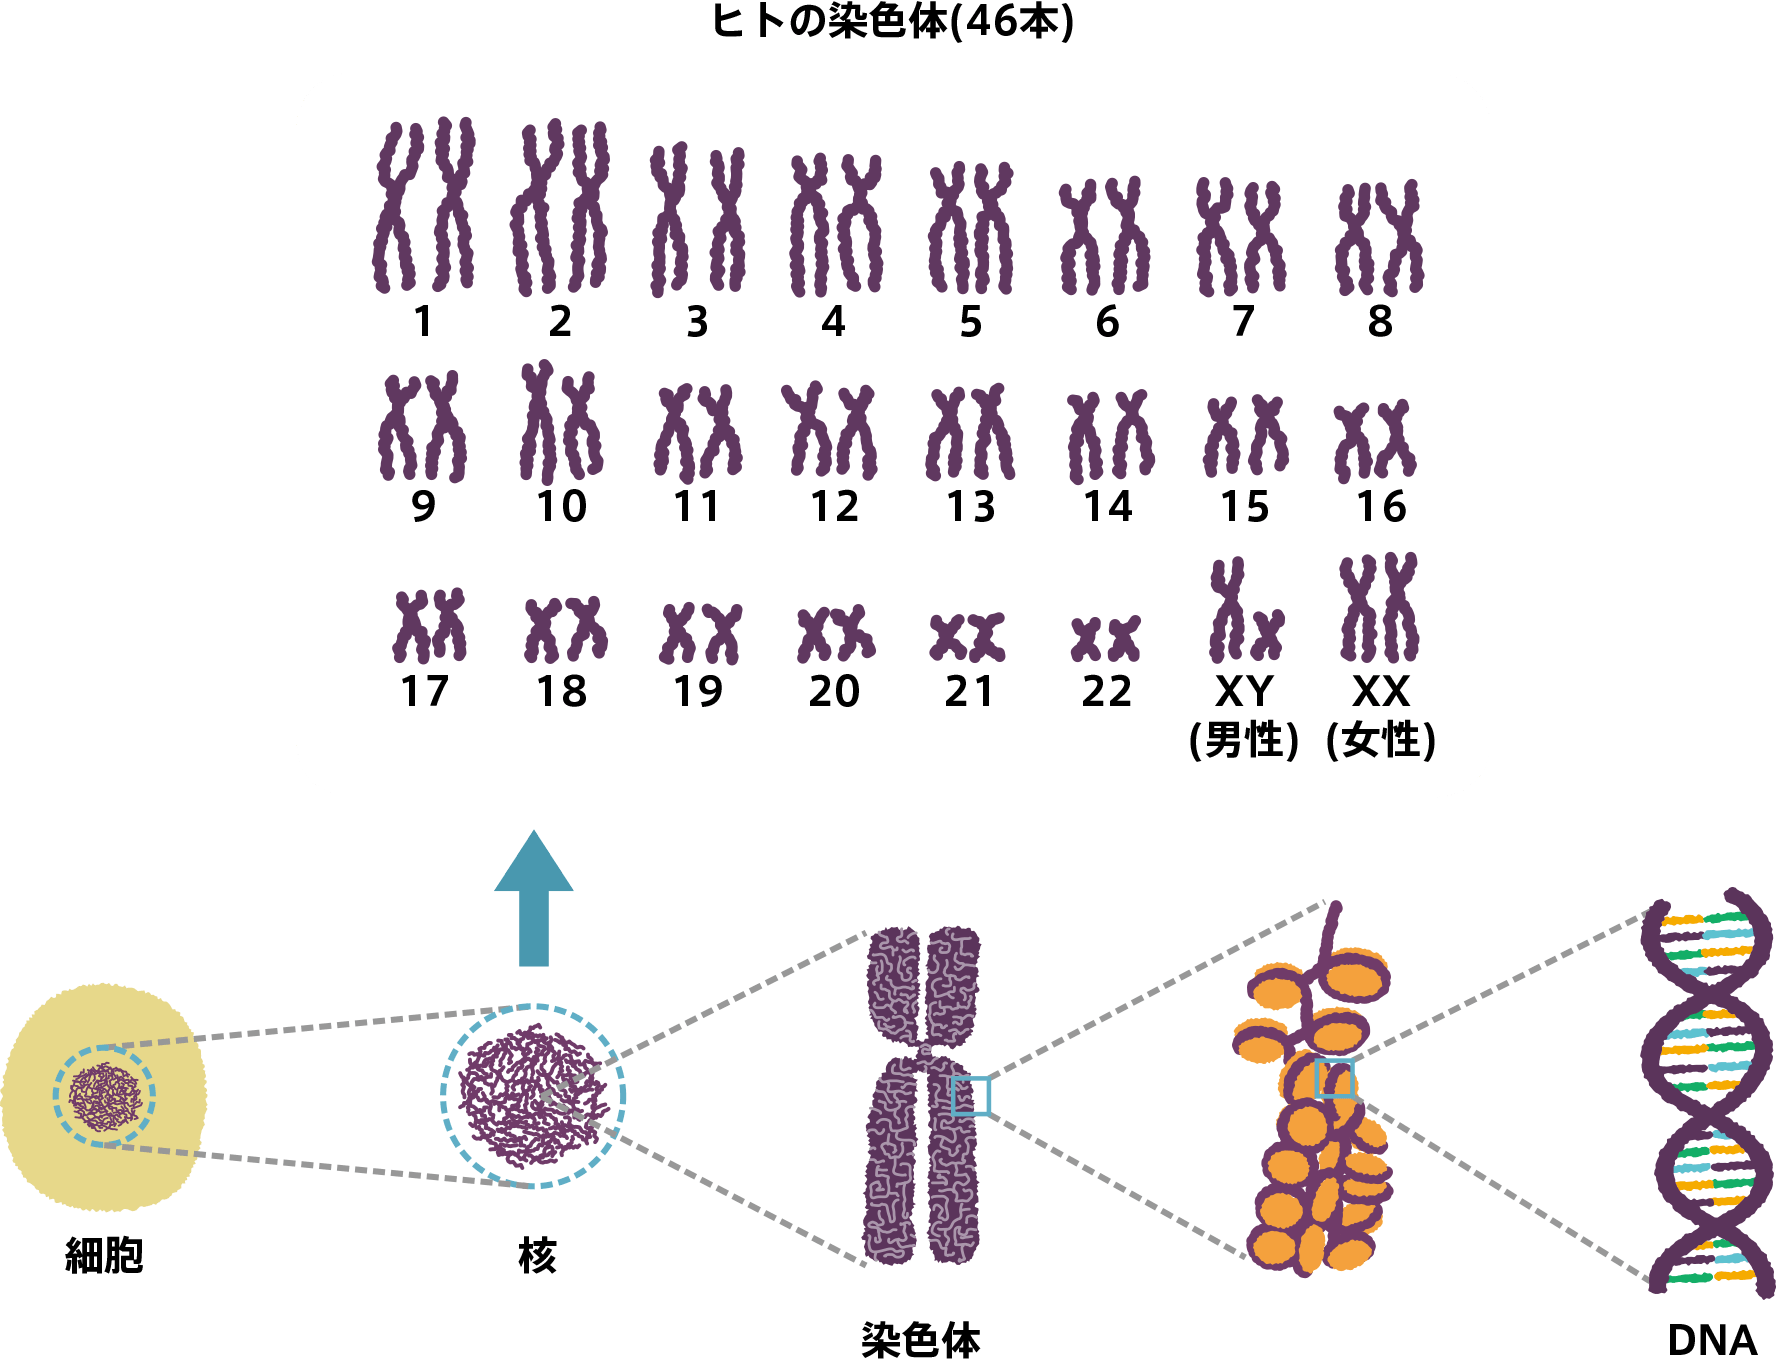 ヒトの染色体のイメージ